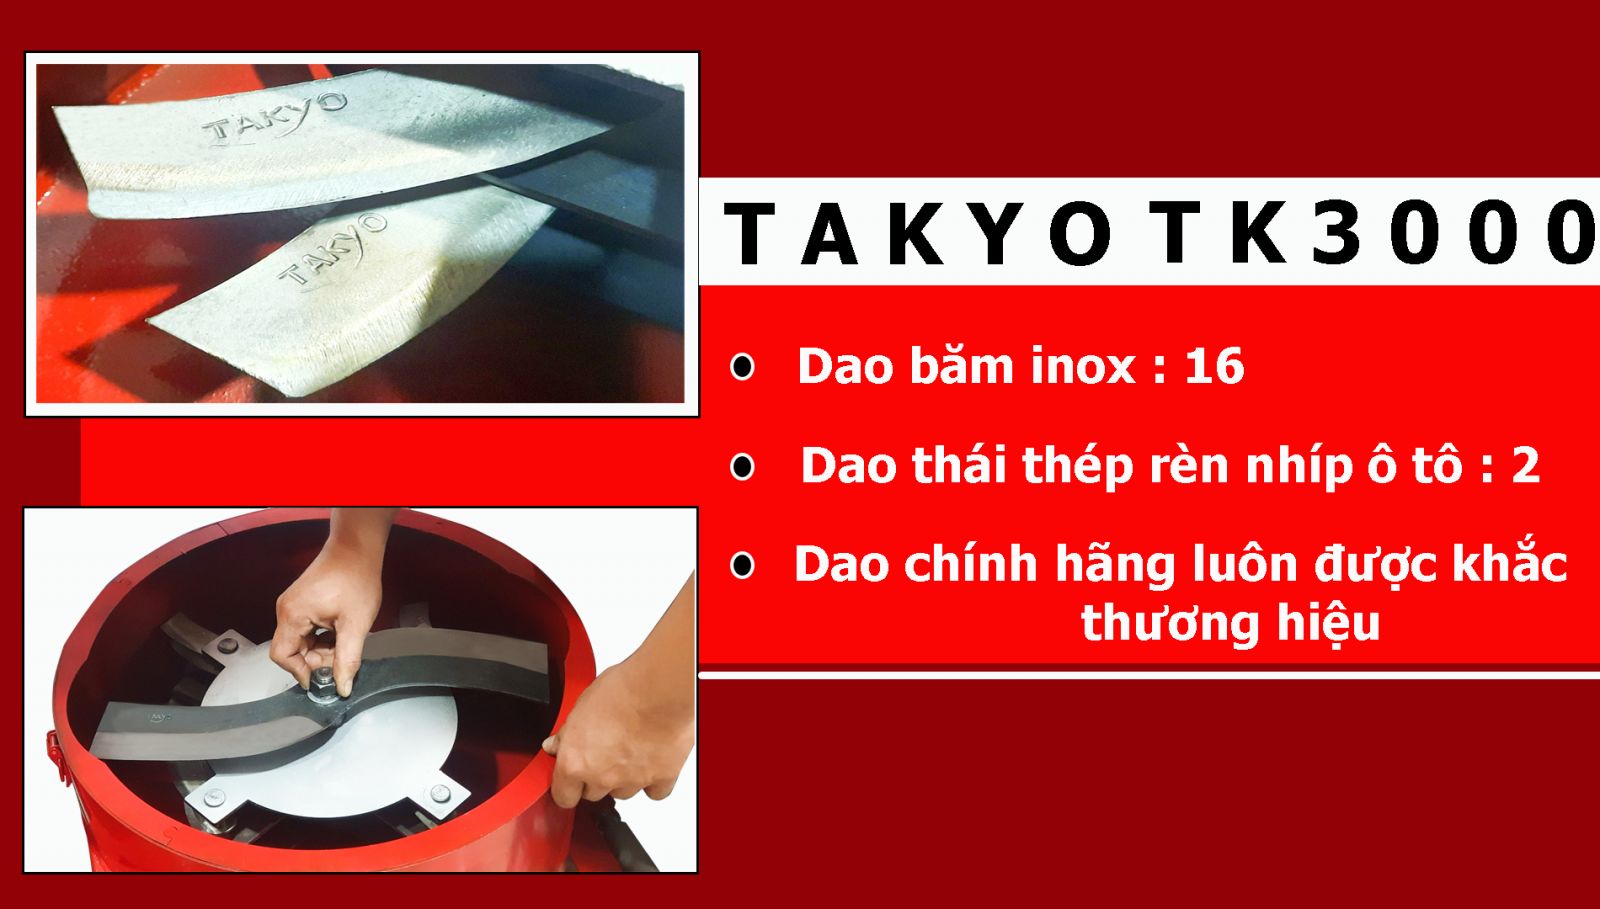 Bộ dao băm thái máy xay cây chuối Takyo TK 3000